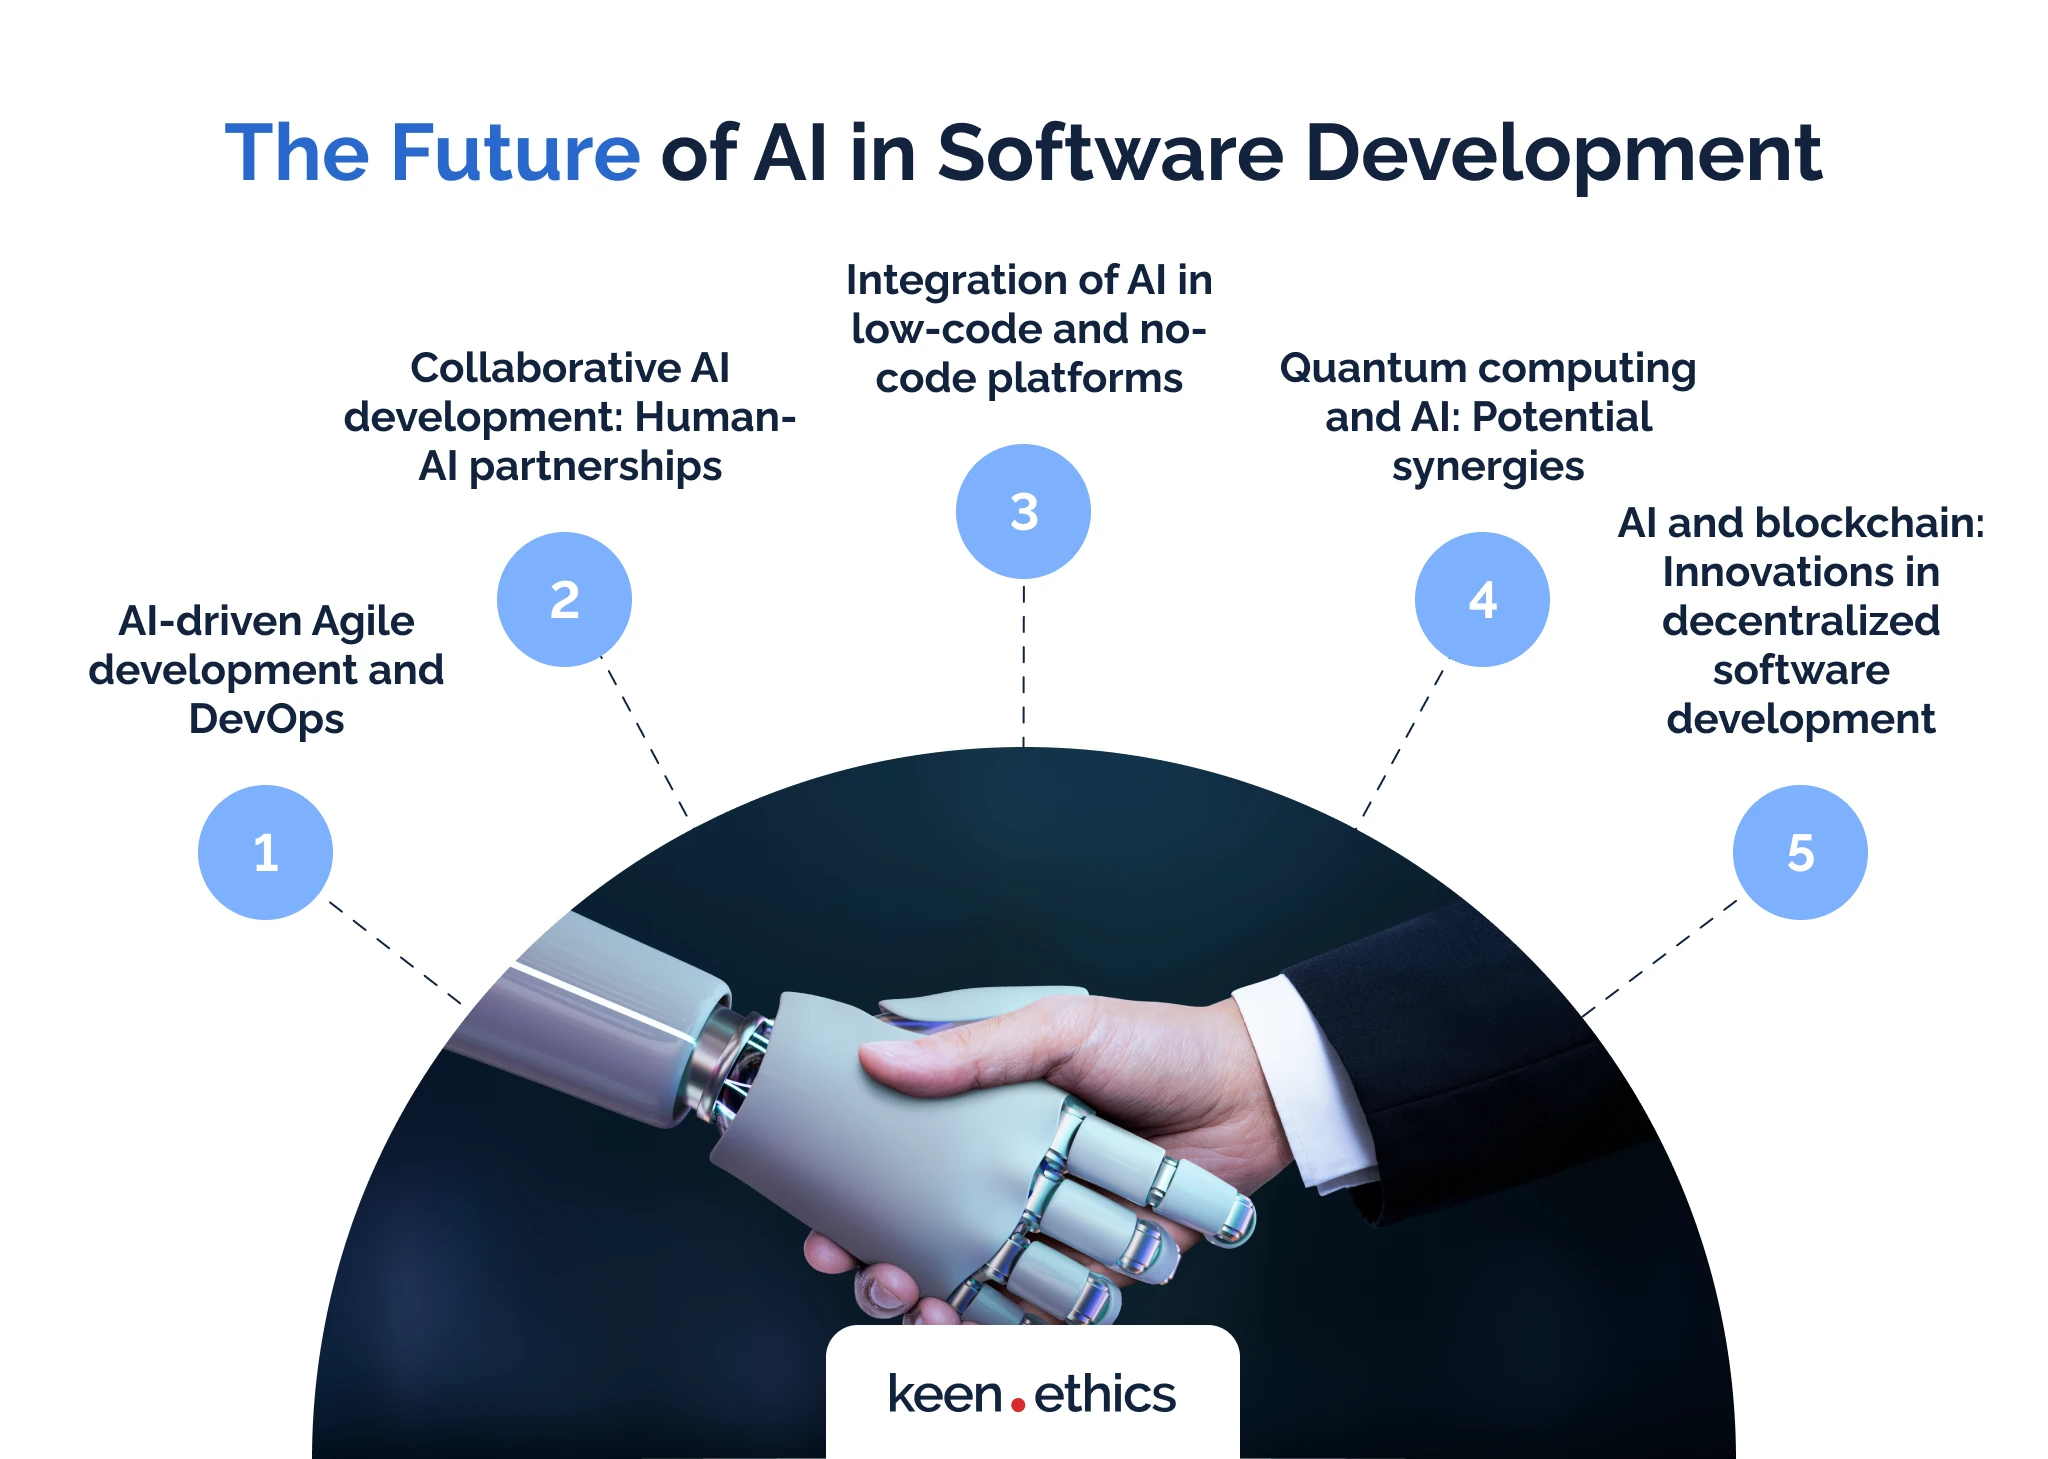 The future of AI in software development